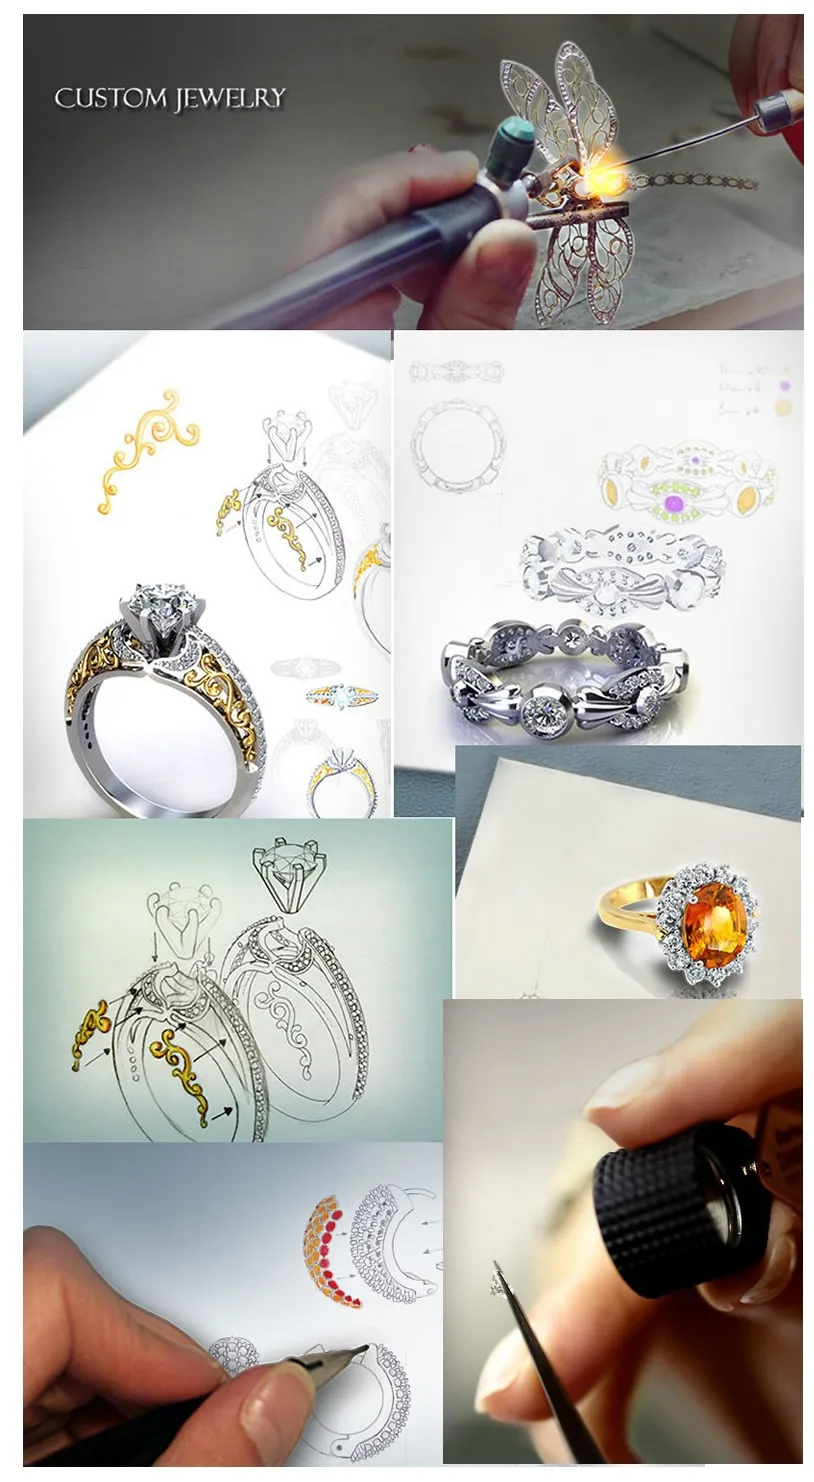 AINUOSHI 14 K массивная, желтая, Золотая кольцо с кисточкой SONA, имитация бриллиантов ювелирные изделия Anillos Подсолнух CZ свадебное кольцо для